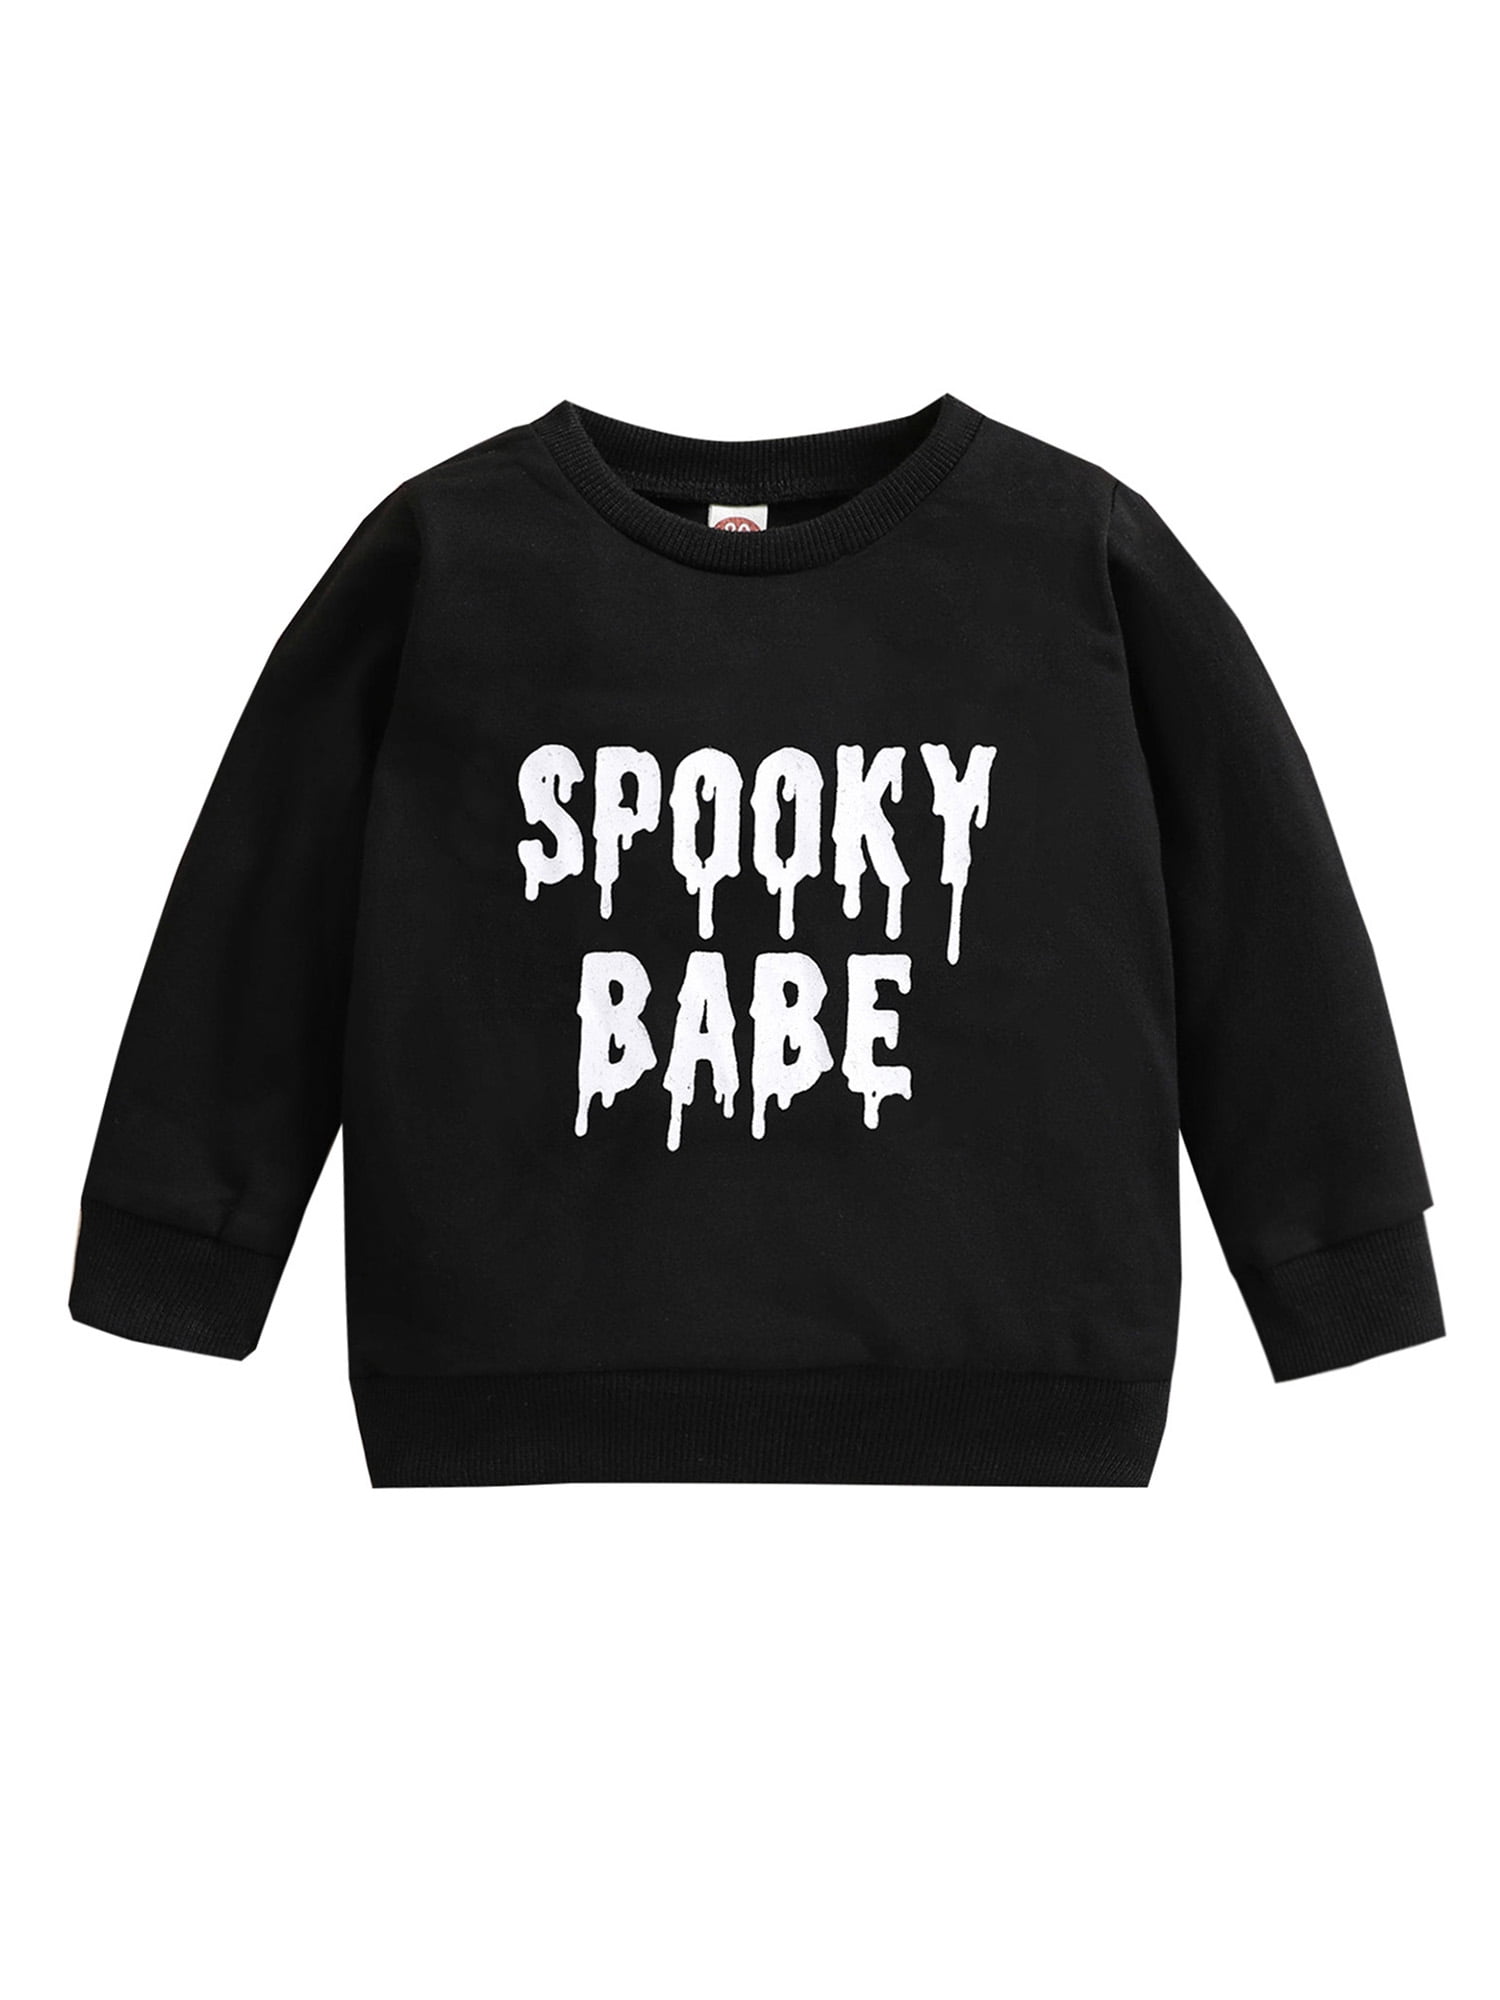 Halloween Sweatshirt Cute Halloween Sweatshirt Spooky Babe Sweatshirt Funny Unisex Crewneck Sweatshirt Halloween Shirt For Women